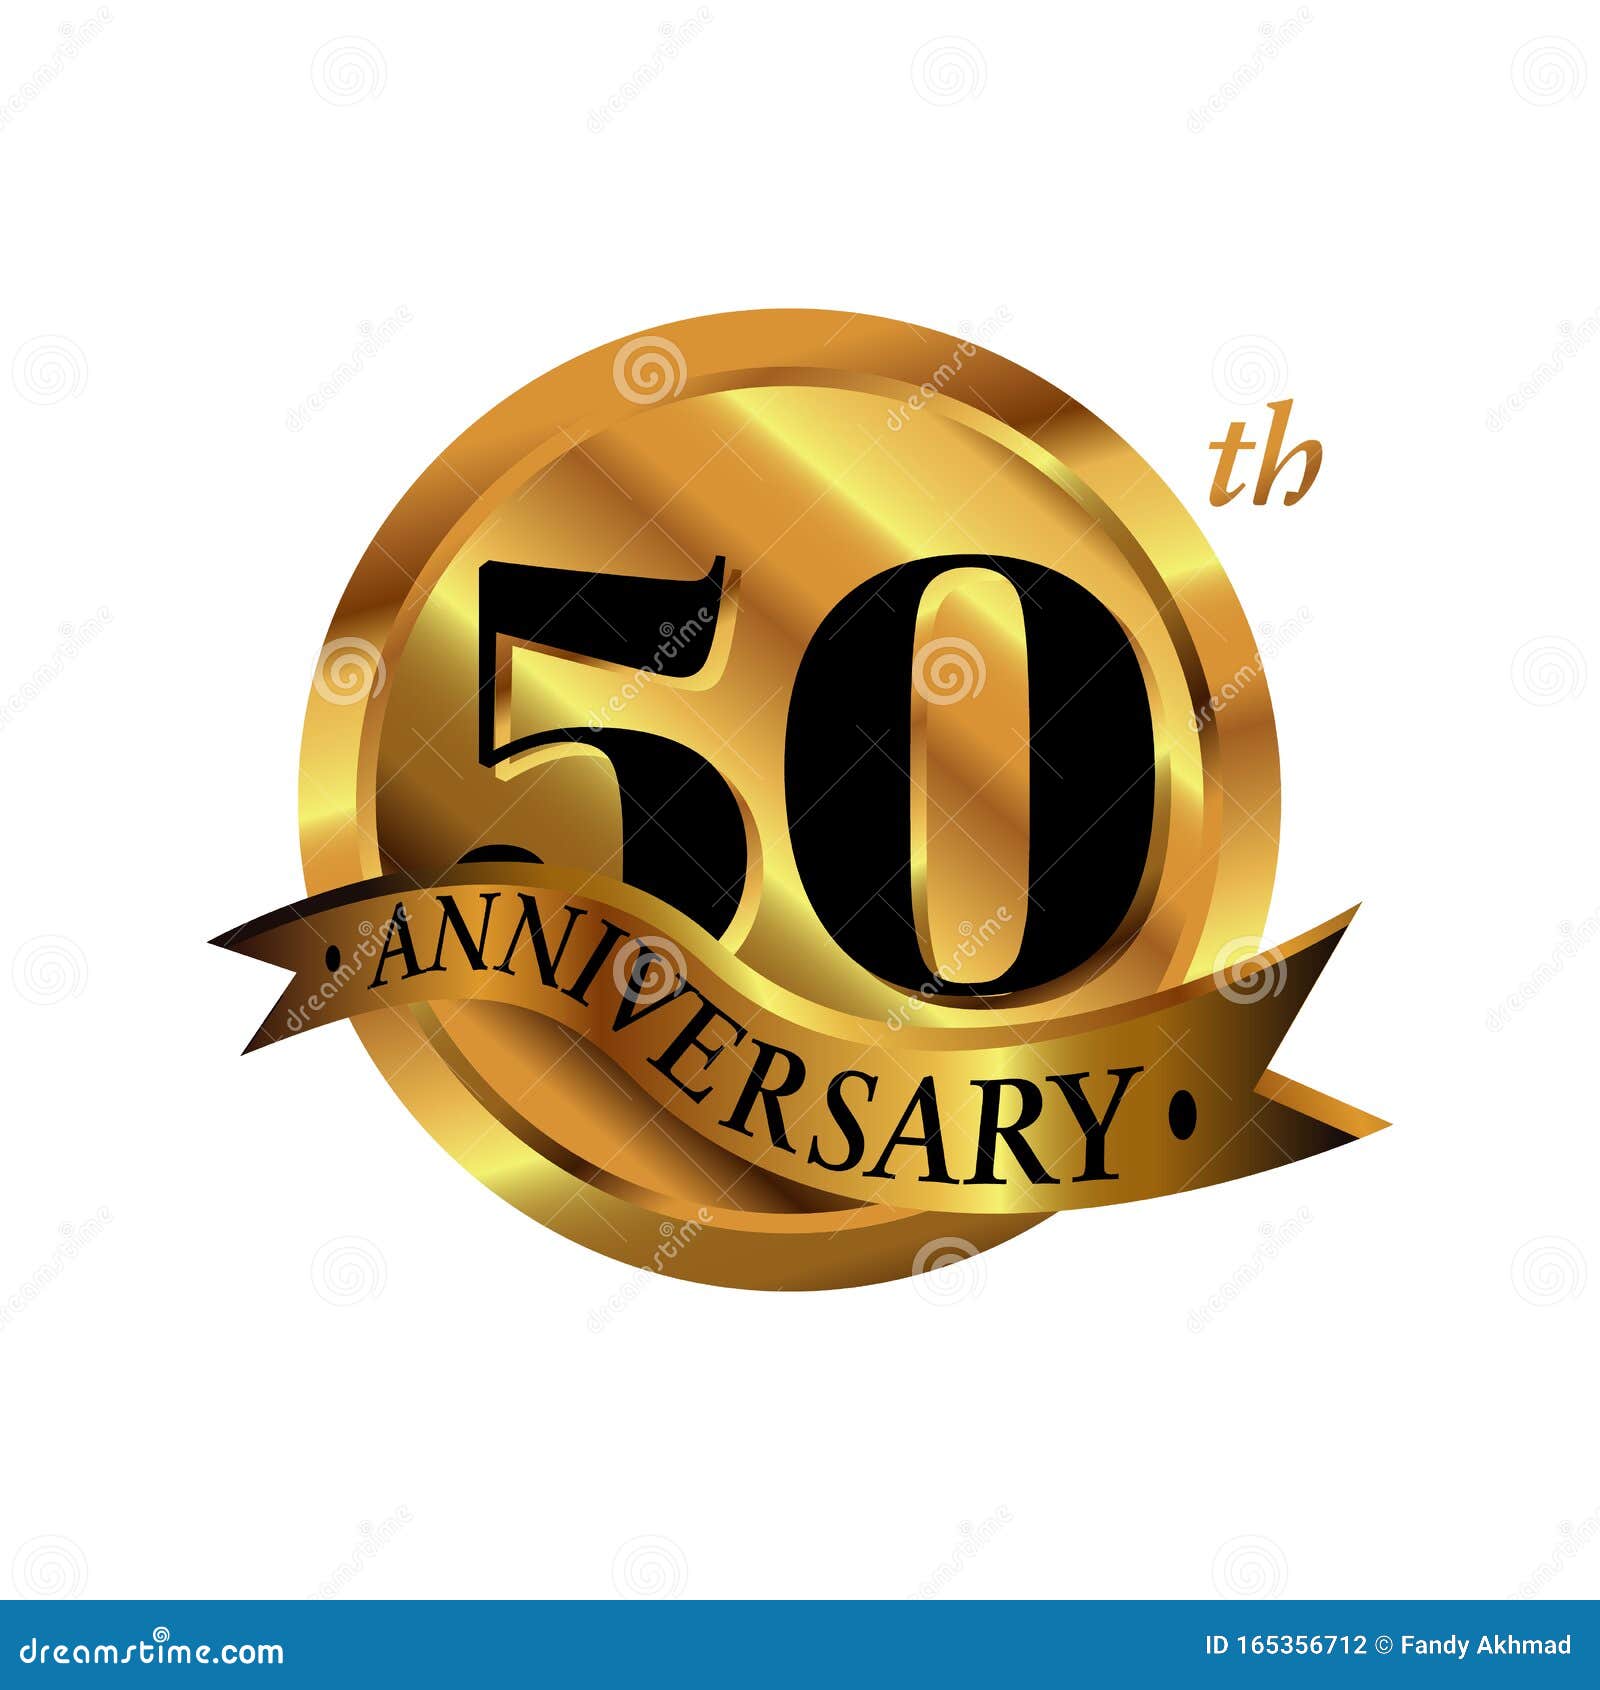 Illustration logo vector vàng 50 năm với thiết kế tinh tế sẽ là điểm nhấn cho bức ảnh kỷ niệm 50 năm của bạn. Khám phá hình ảnh này để cảm nhận sự sang trọng và trang trọng trong ngày kỷ niệm quan trọng này.